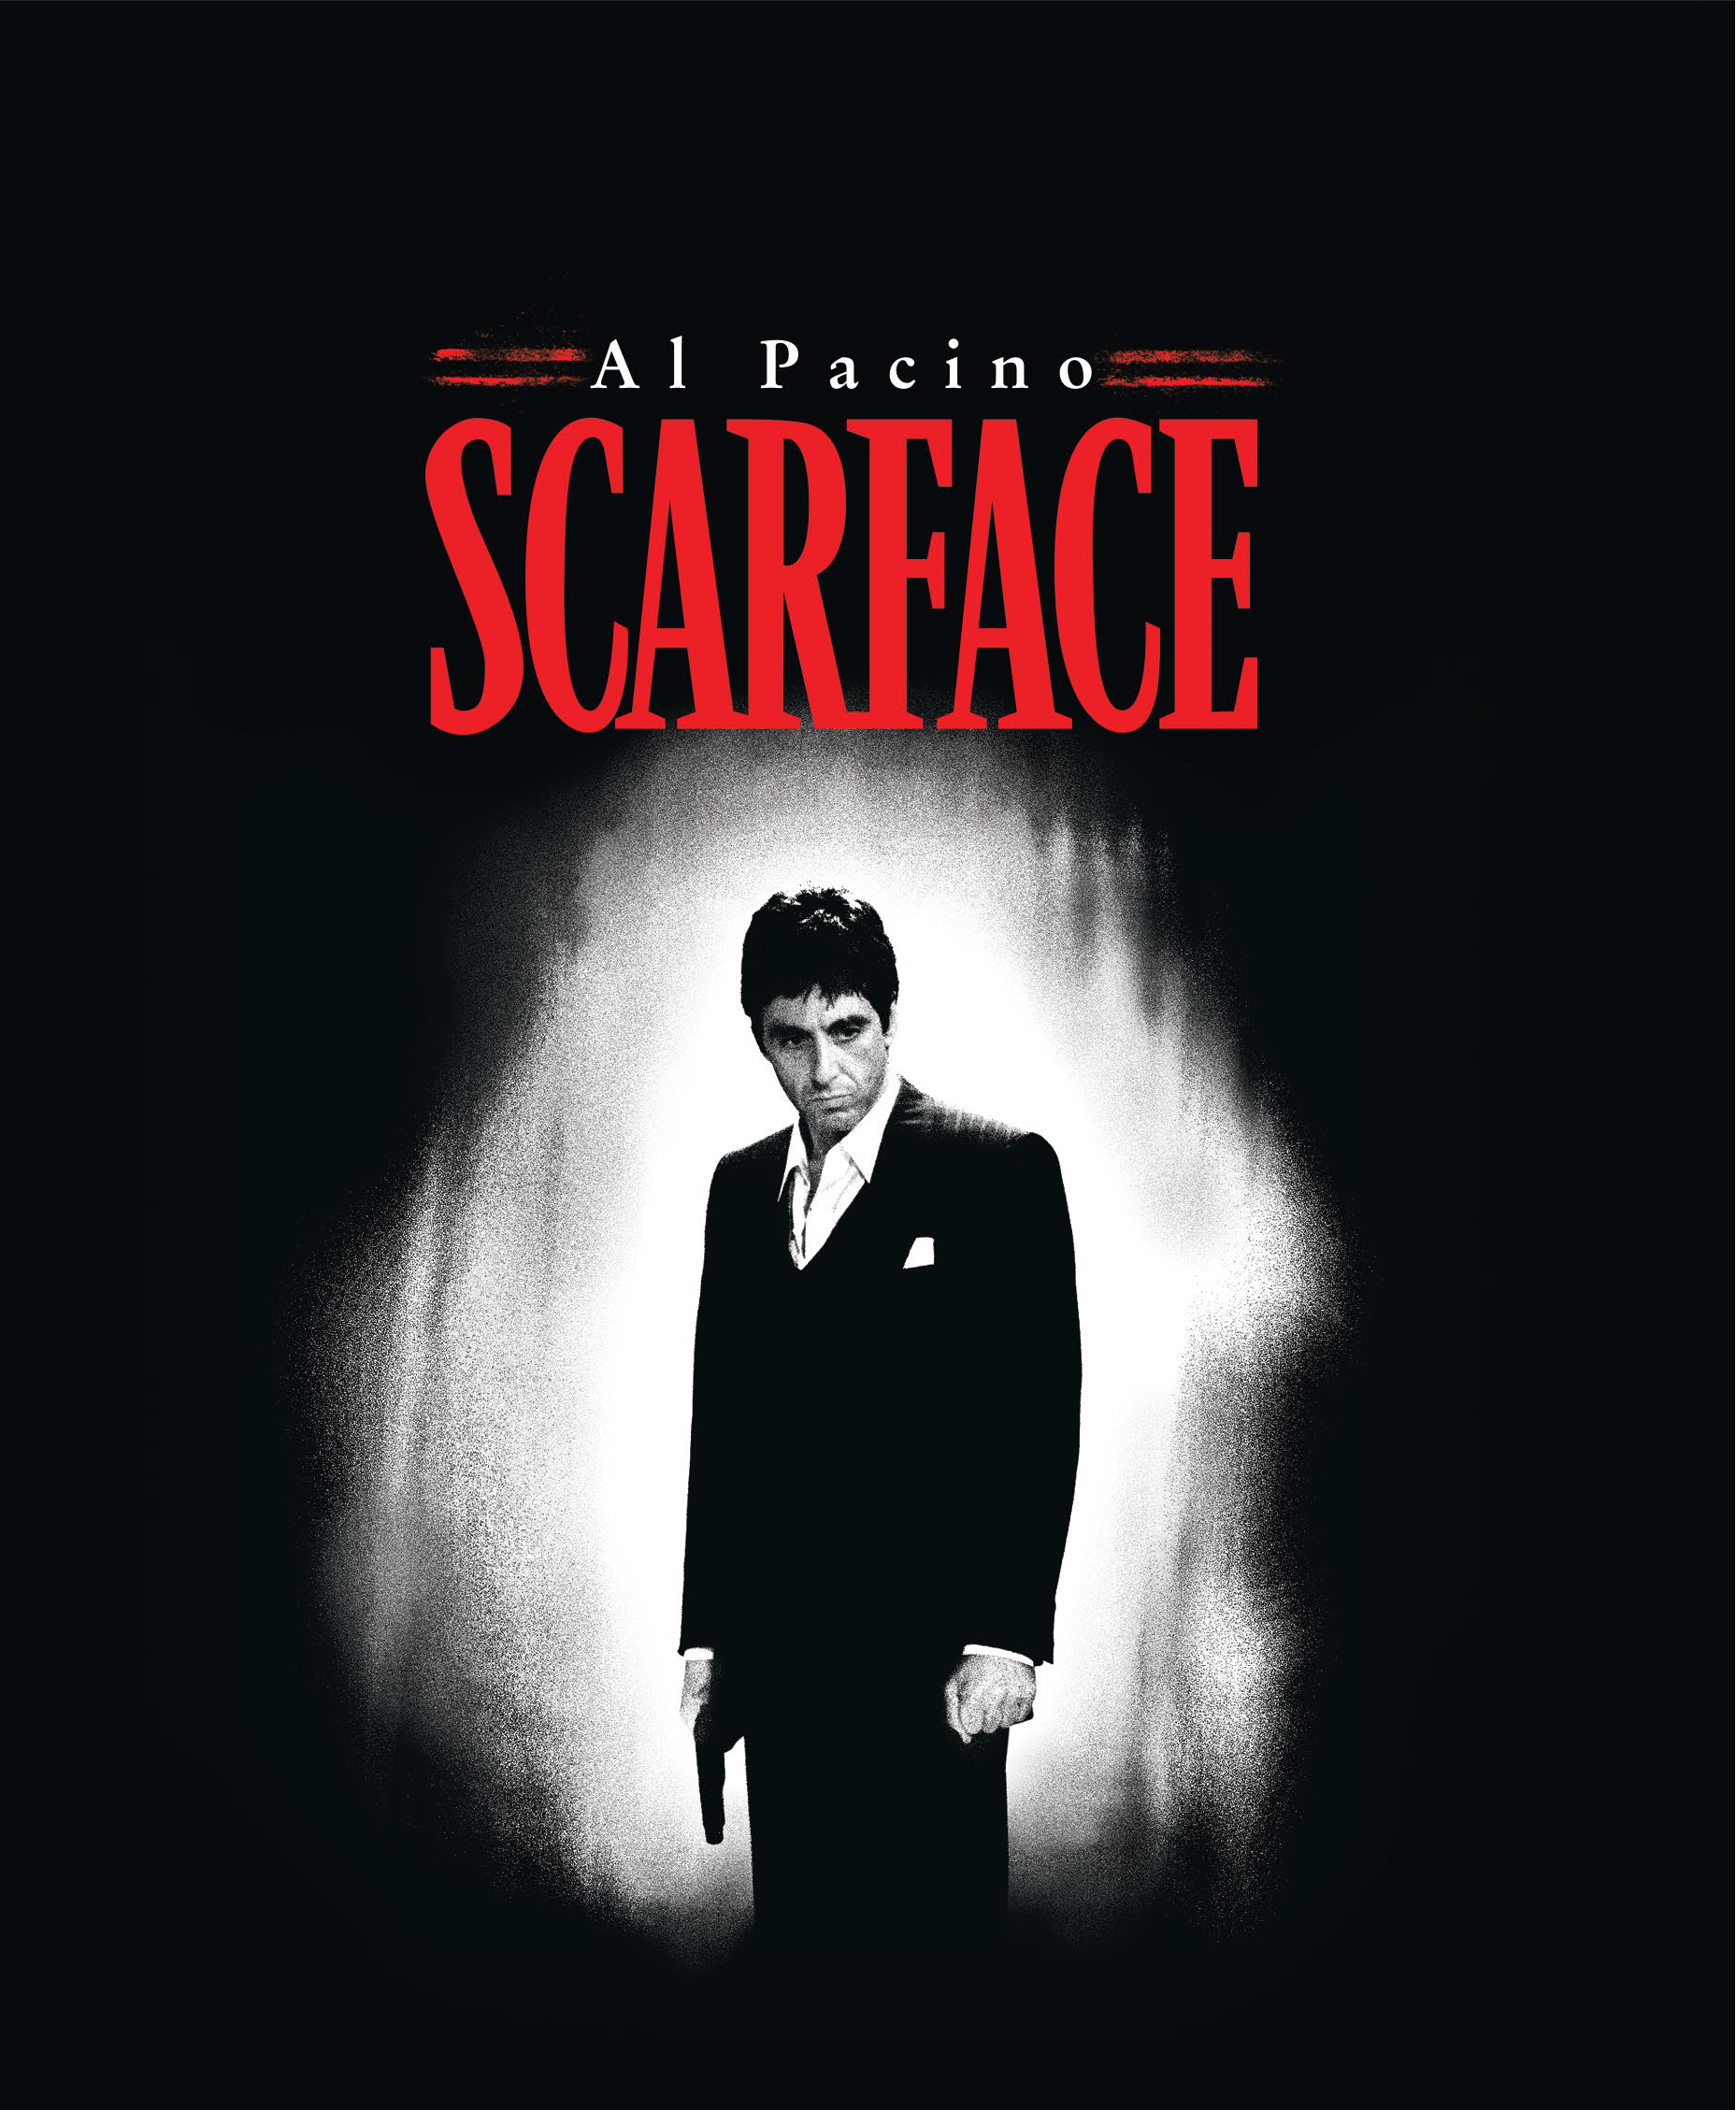 Scarface (Blu Ray + Digital) (Steelbook Packaging) (Walmart Exclusive)